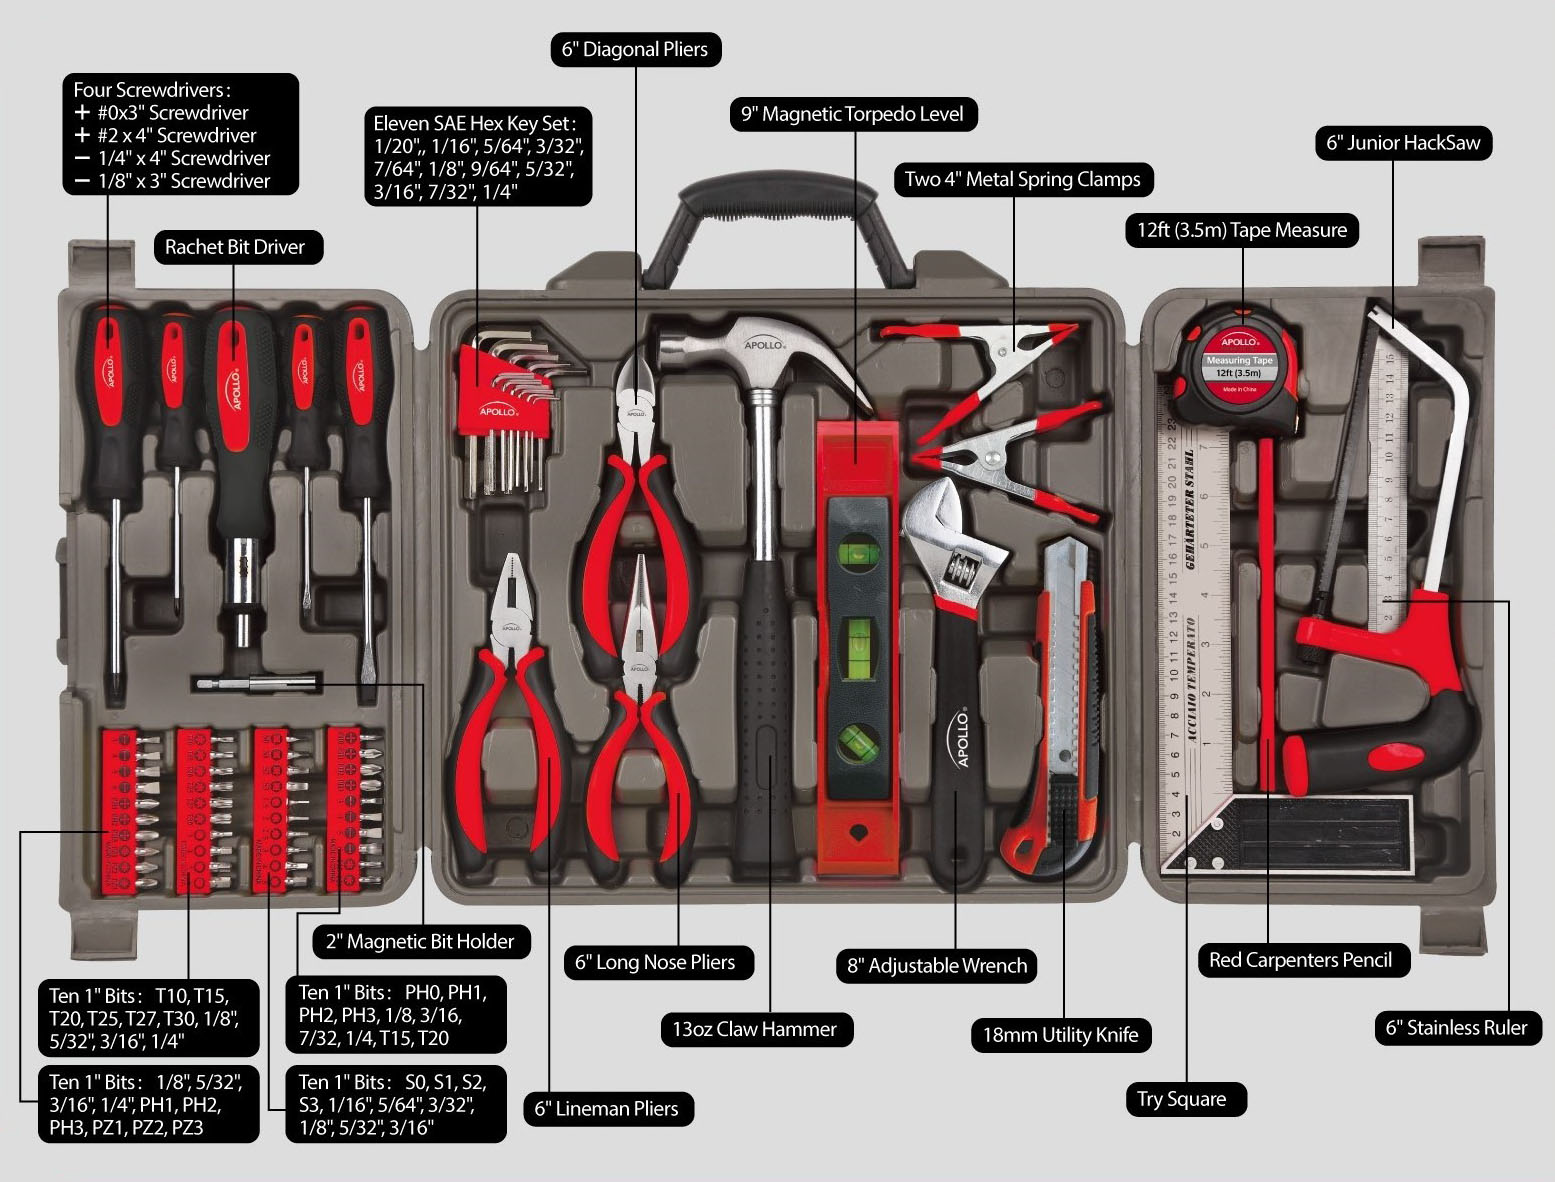 Apollo Precision Tools DT0204 71-Piece Household Tool Kit